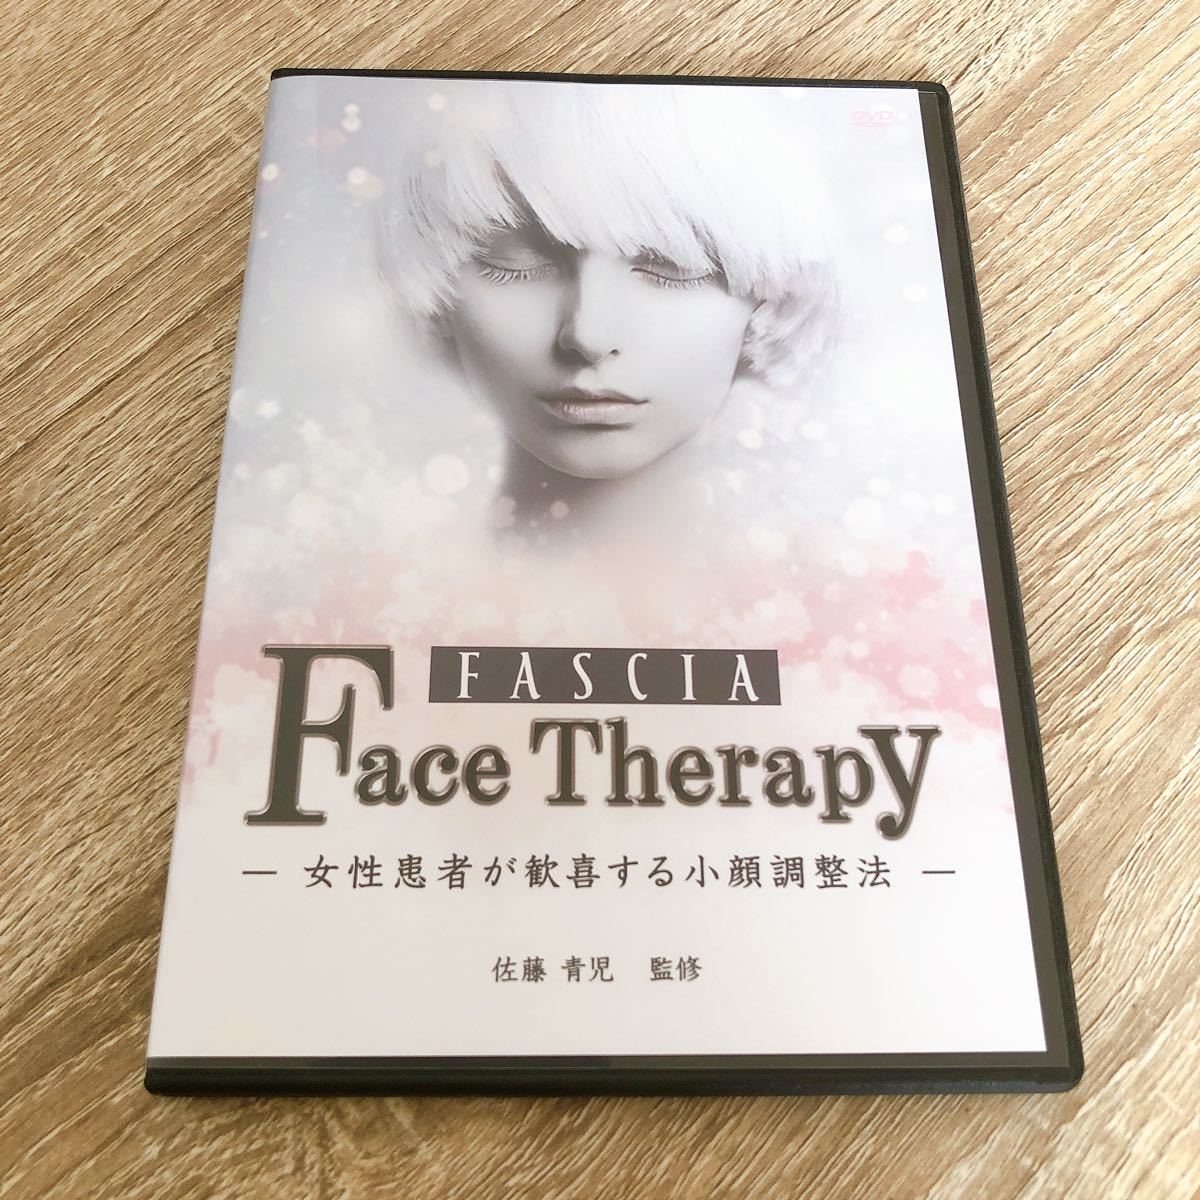 佐藤青児【FACIA】フェイスセラピー DVD